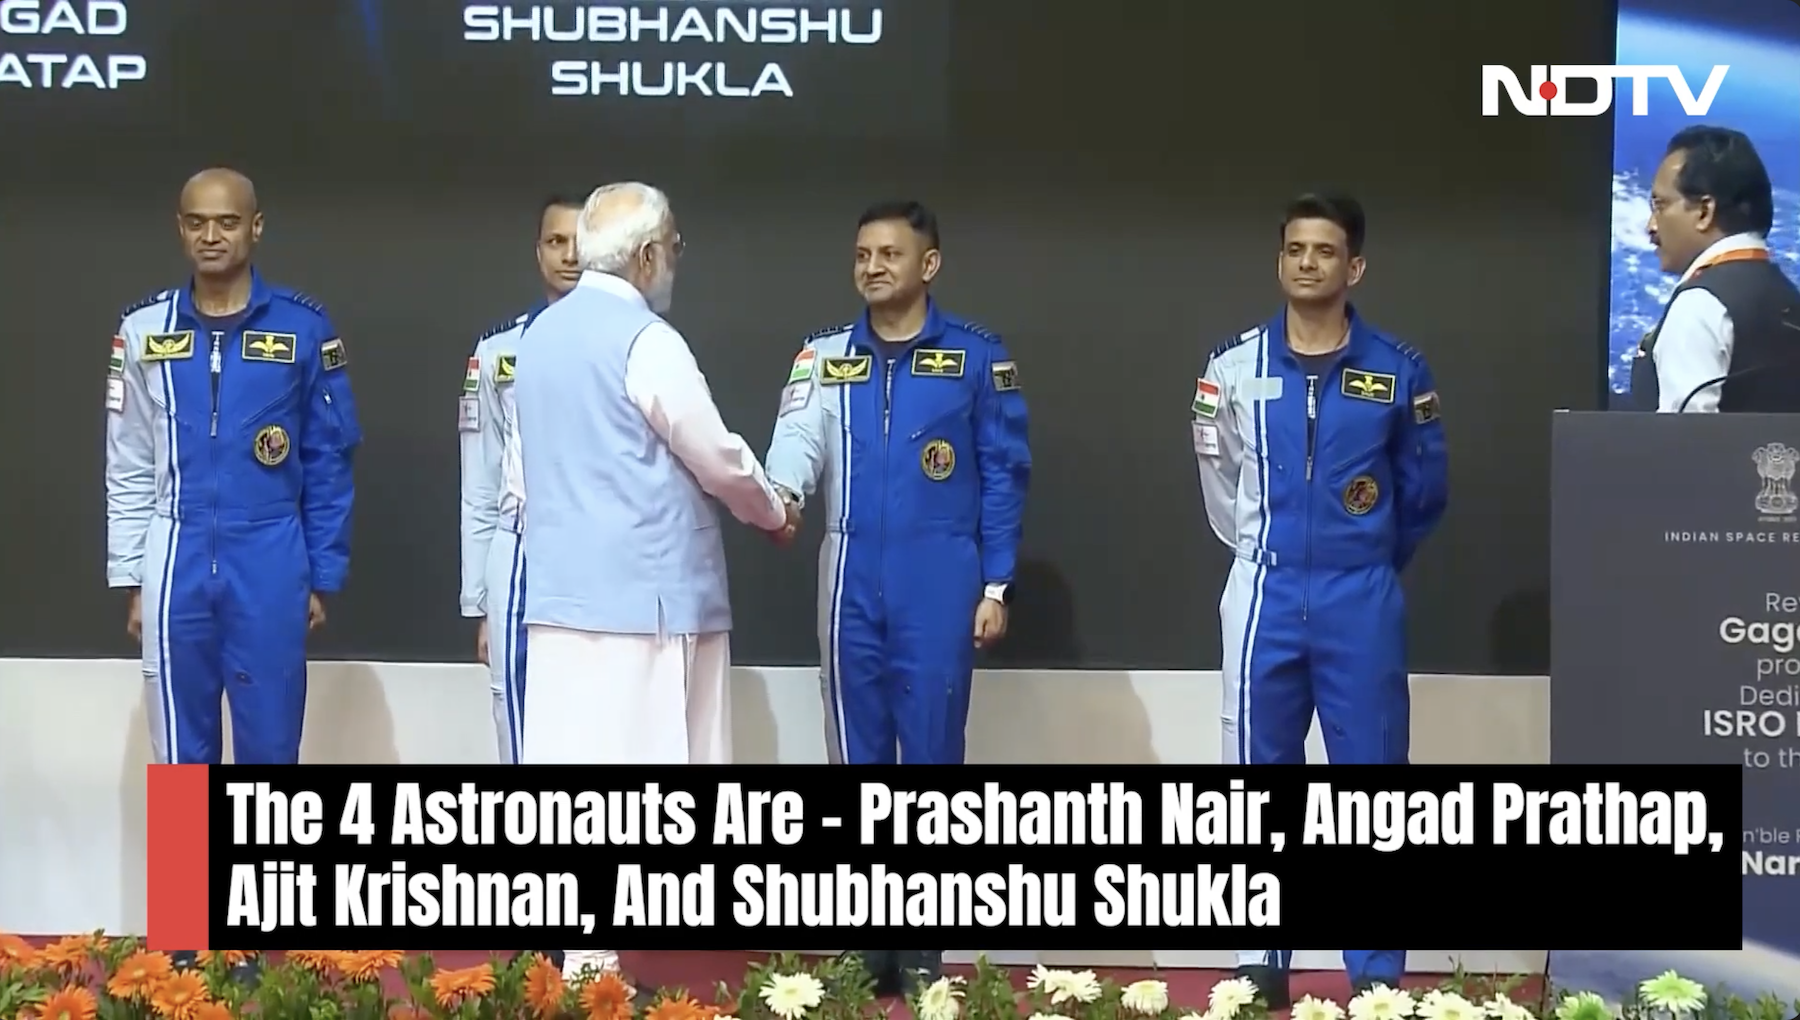 印度明年上太空 拚第4個送太空人上天國家